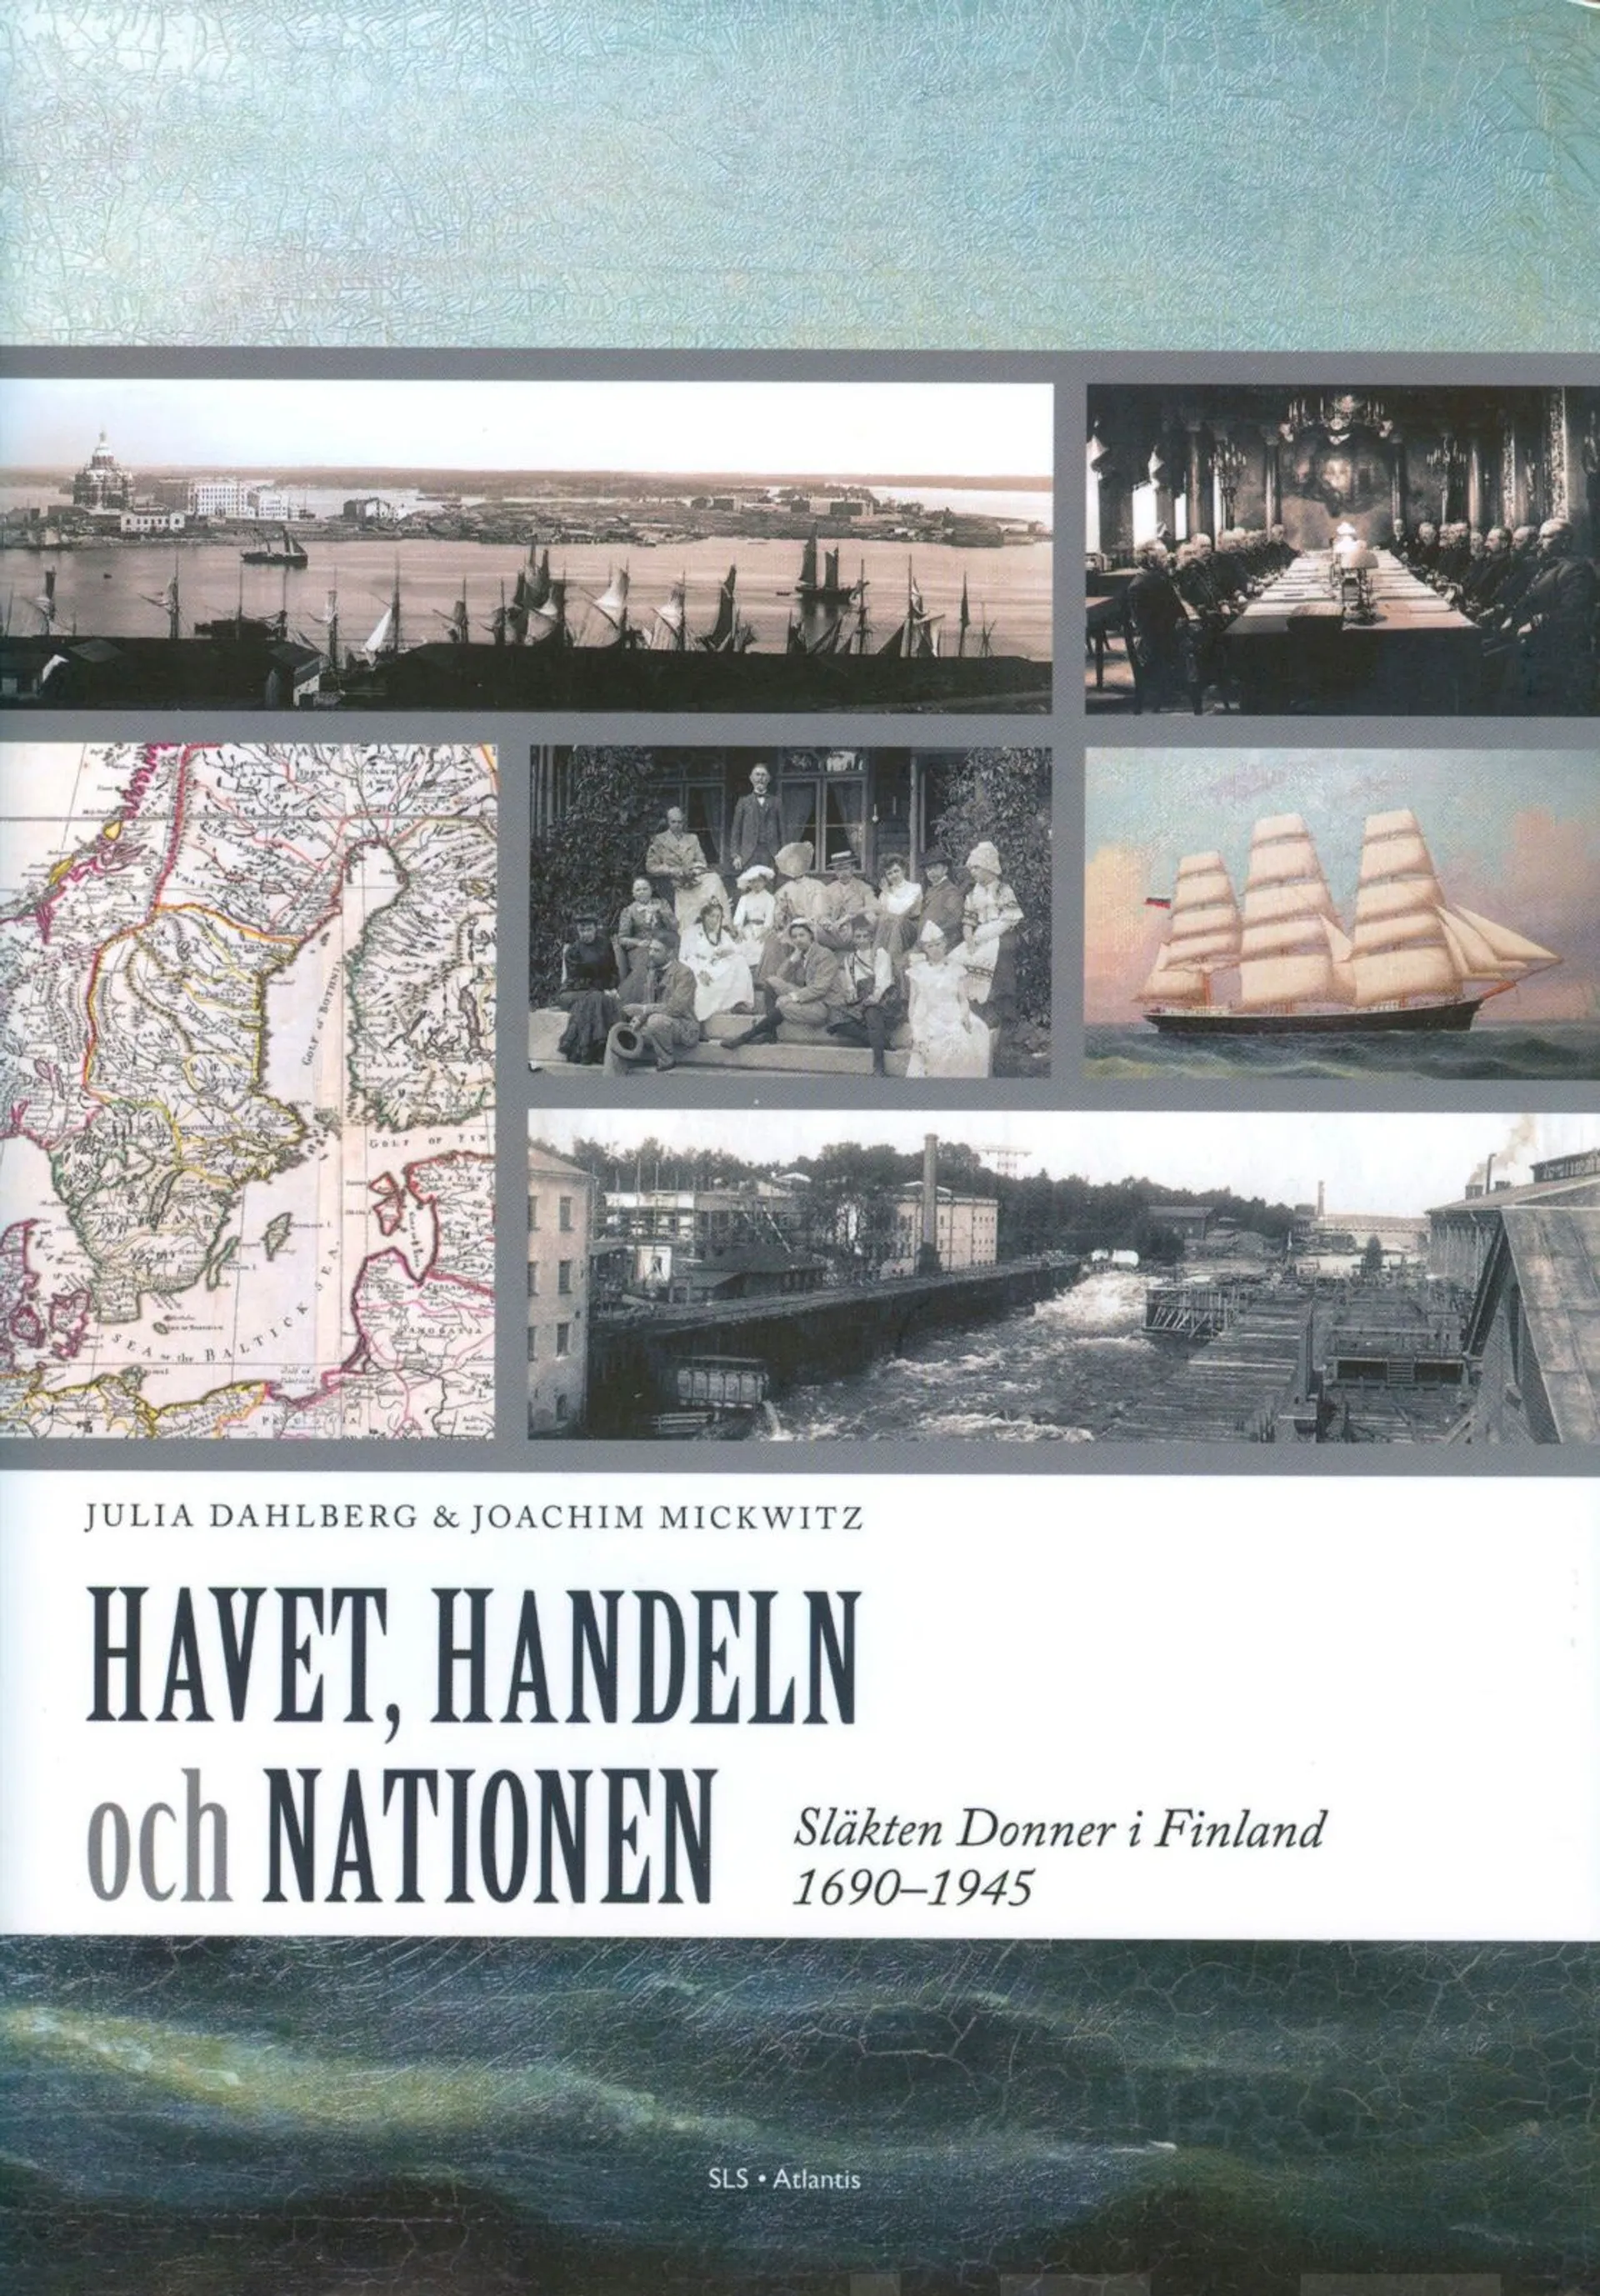 Dahlberg, Havet, handeln och nationen - släkten Donner i Finland 1690-1945